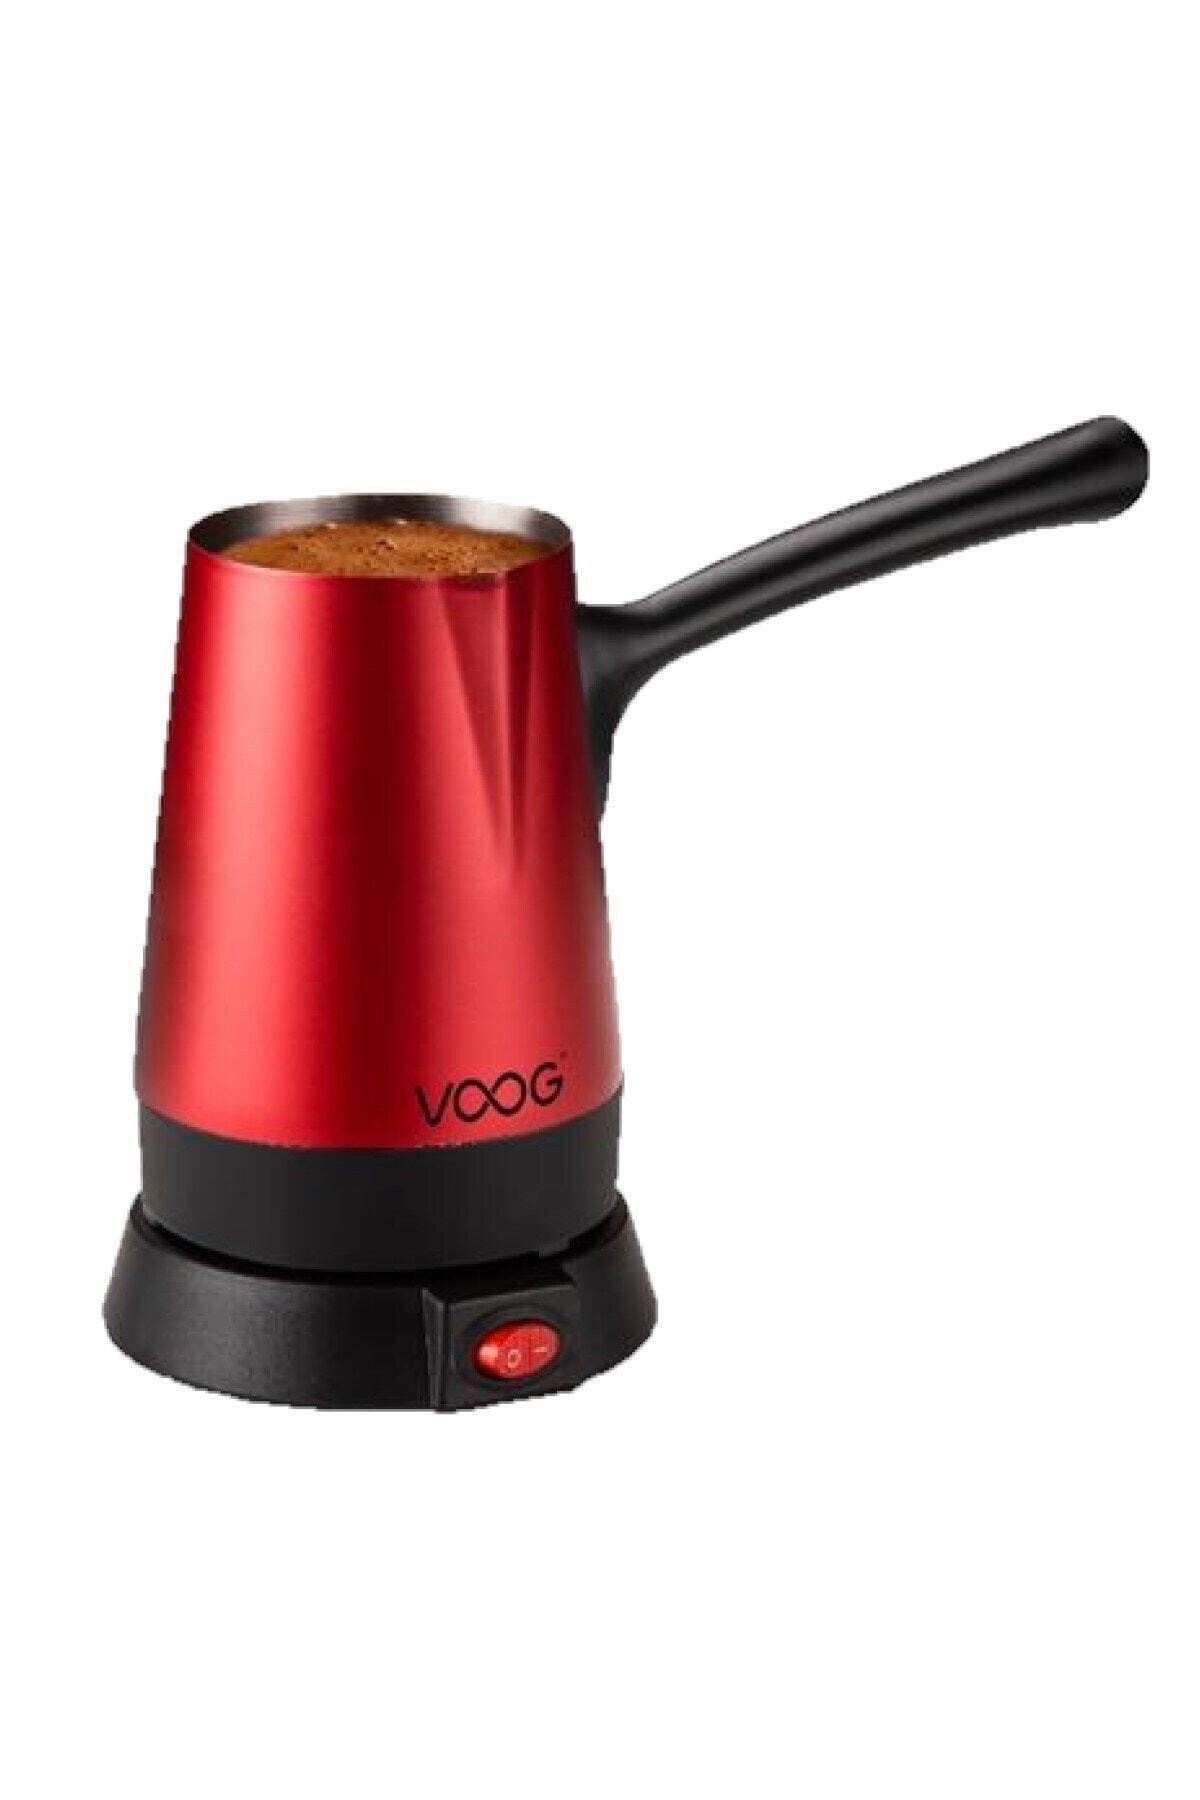 Voog J101 Lps-01-02 Kırmızı Kahve Makinası 800 W